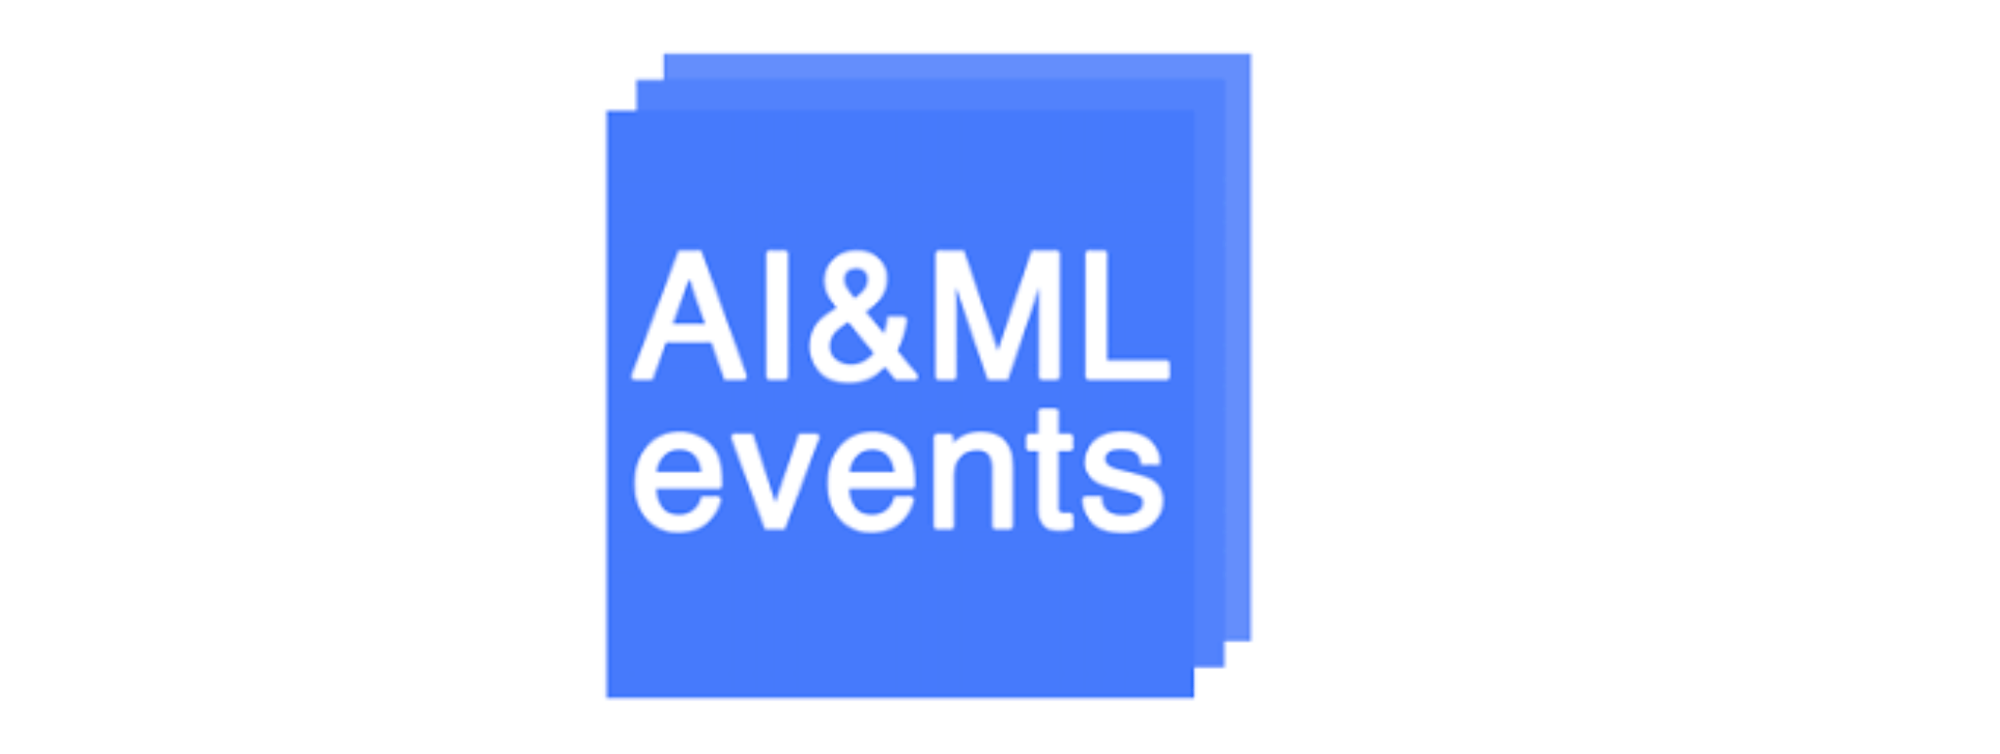 AI&ML events